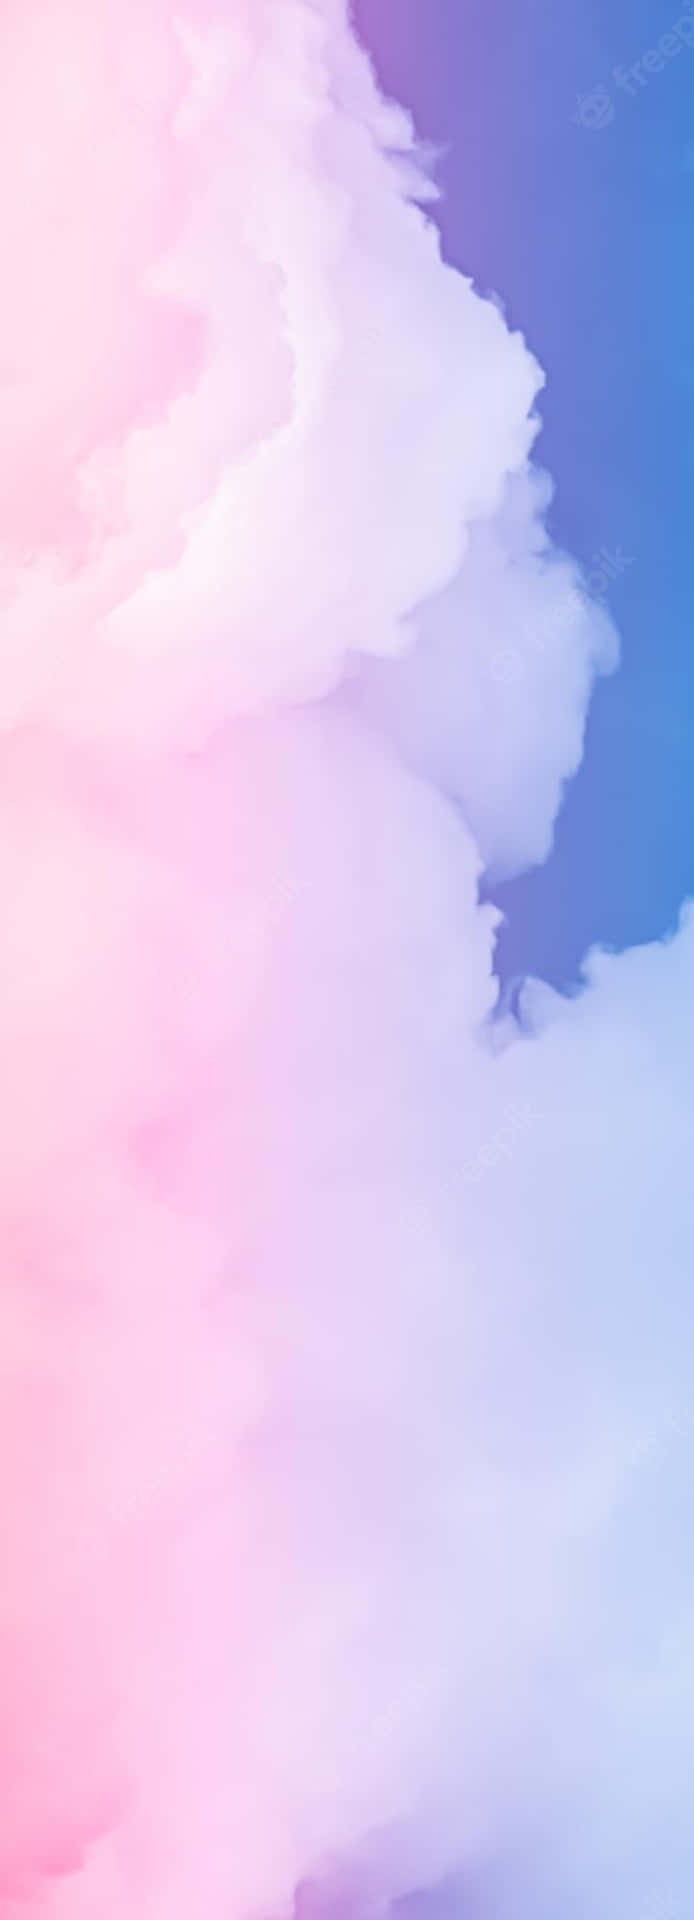 Unpaisaje Cautivador De Nubes Rosas Y Azules En El Cielo. Fondo de pantalla